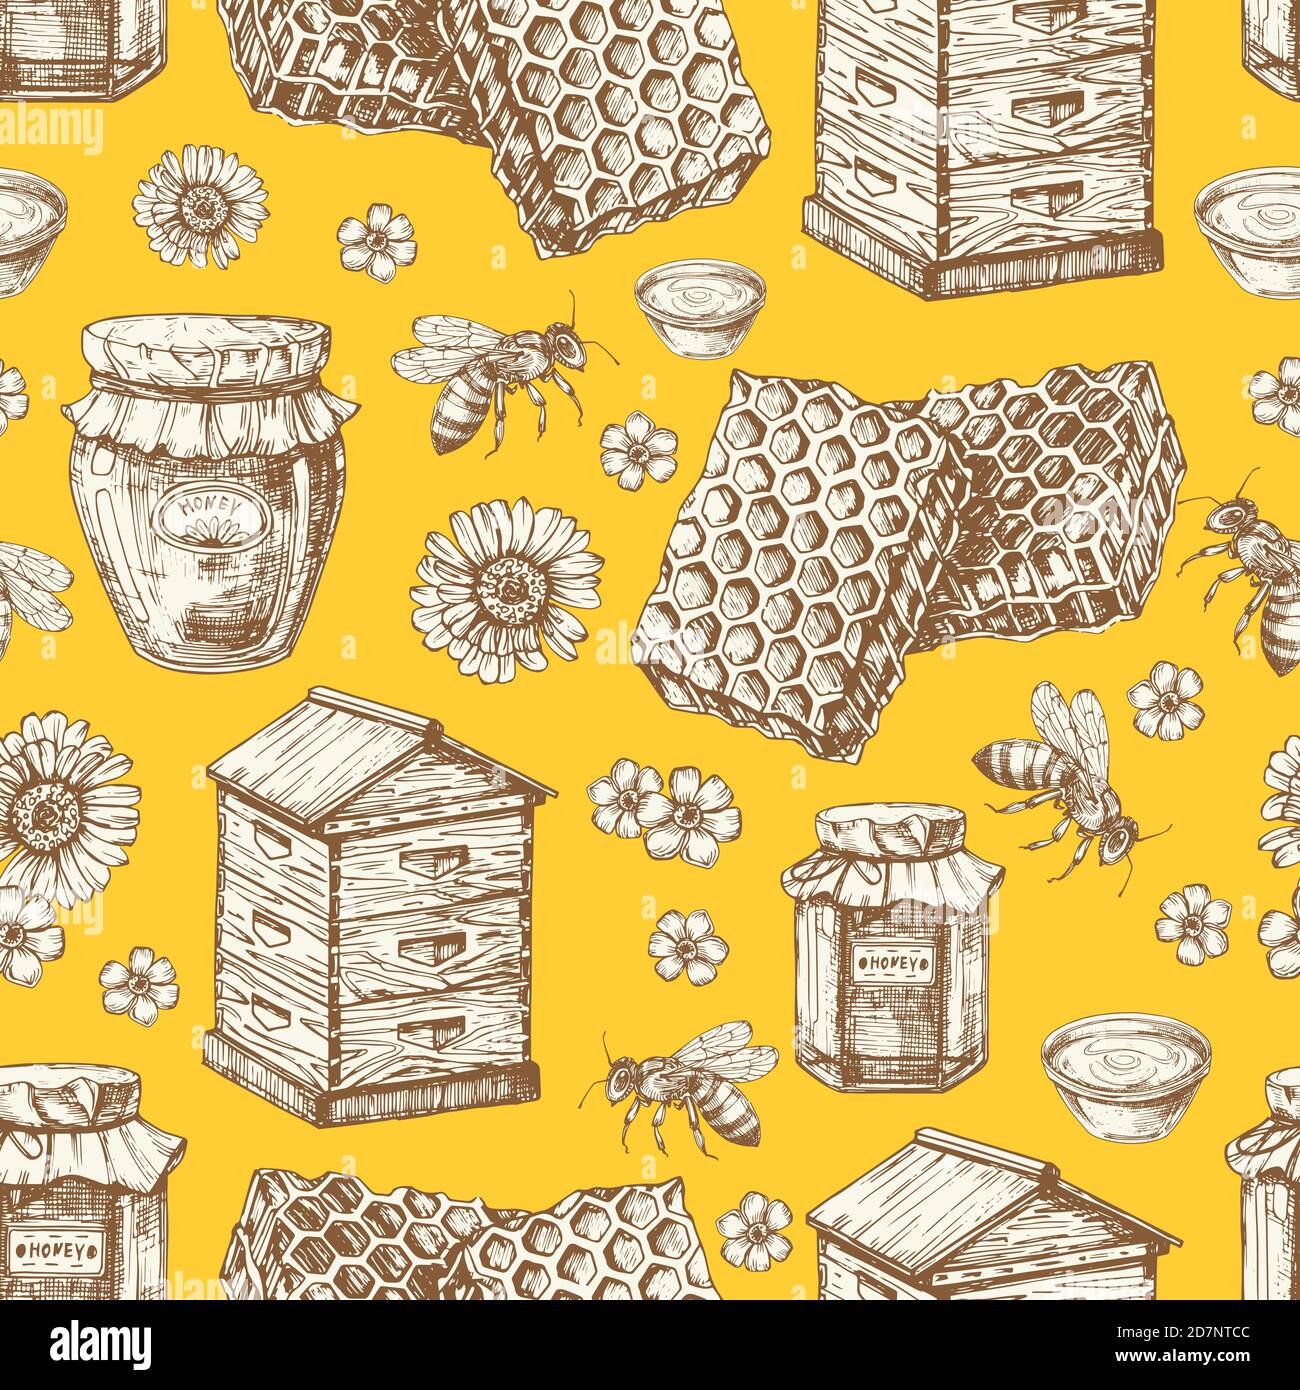 Handgezeichnetes, nahtloses Honigmuster mit Gläsern, Bienen, Blumen und Bienenstock. Illustration von Biene und süßem Honig, natürliches Bienenwachs Stock Vektor